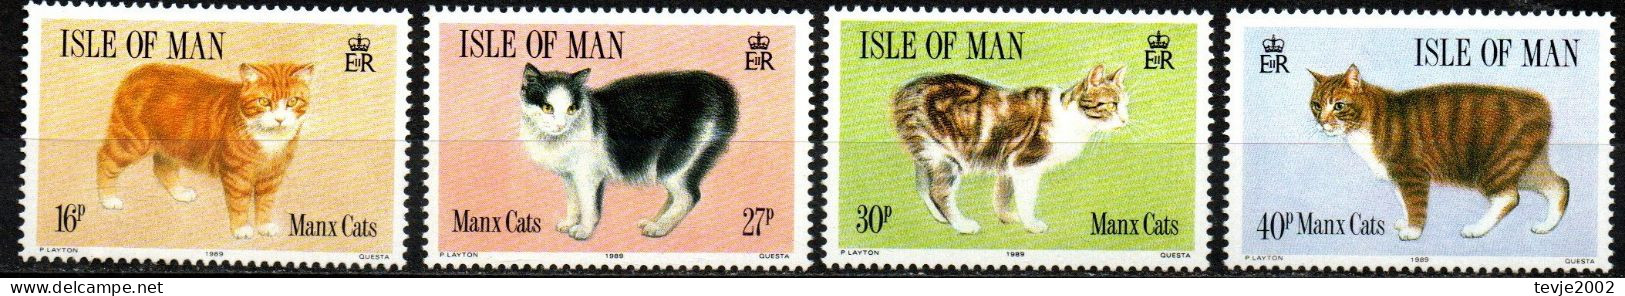 Isle Of Man 1989 - Mi.Nr. 383 - 389 - Postfrisch MNH - Tiere Animals Katzen Cats - Katten